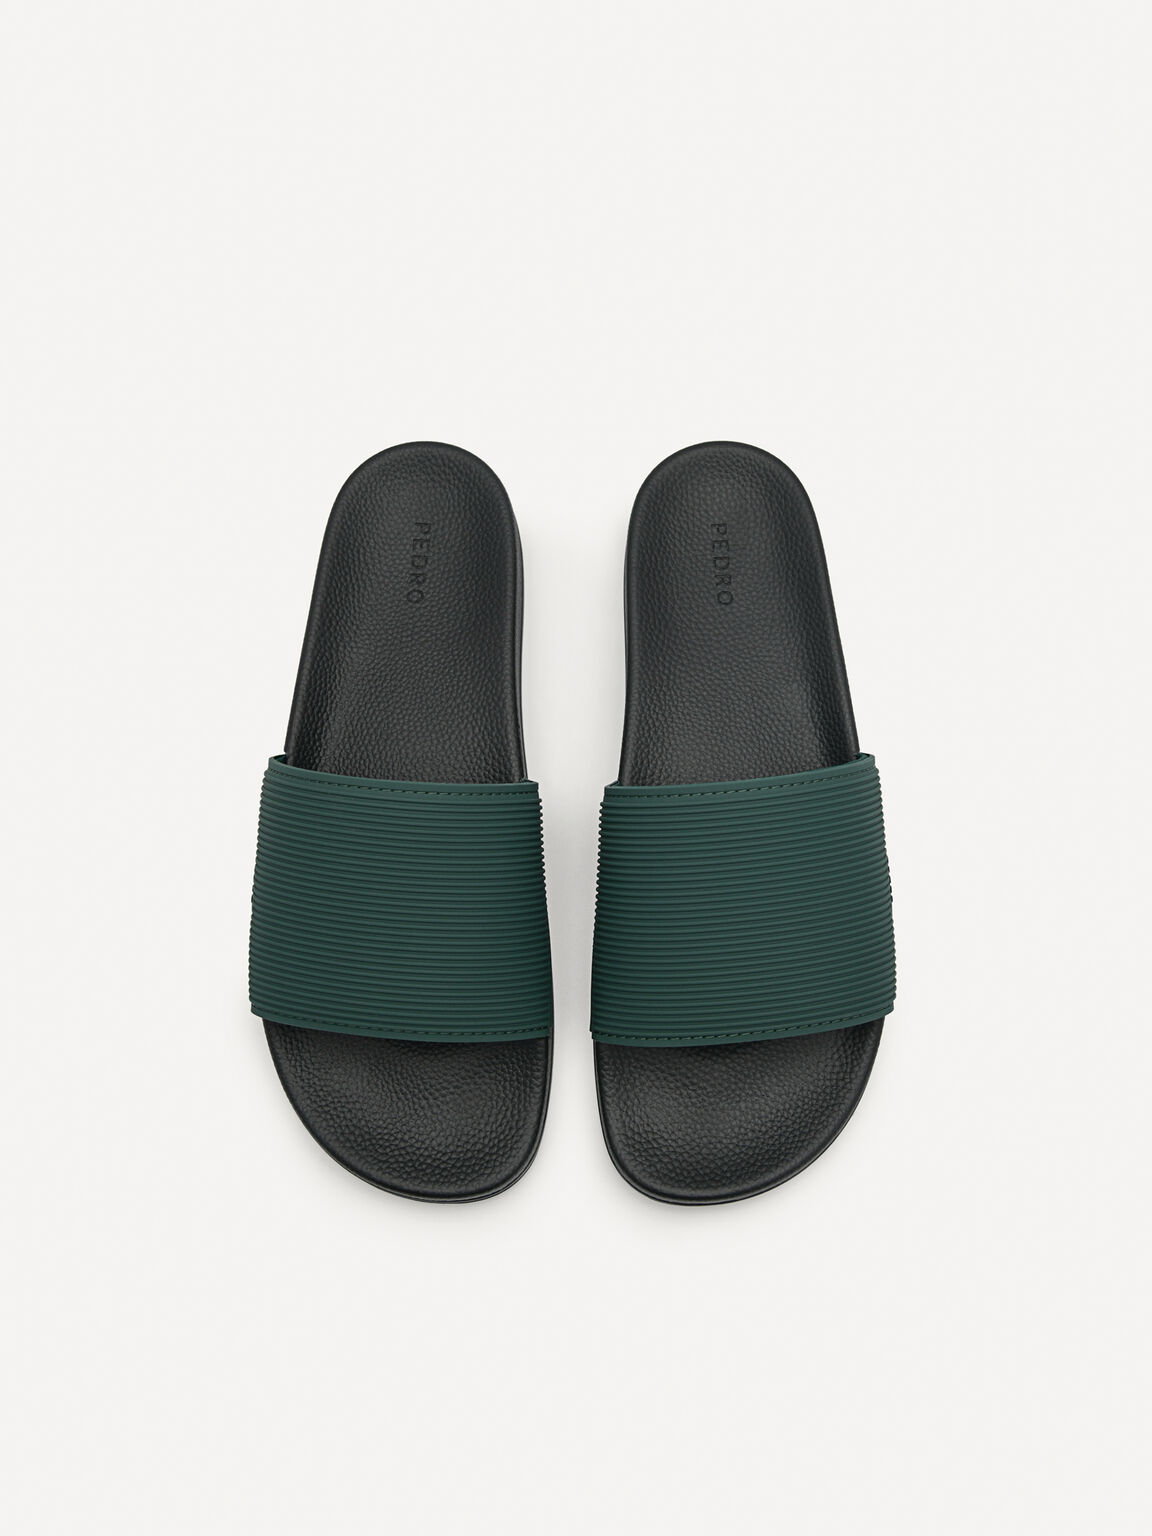 Slide Sandals, Dark Green